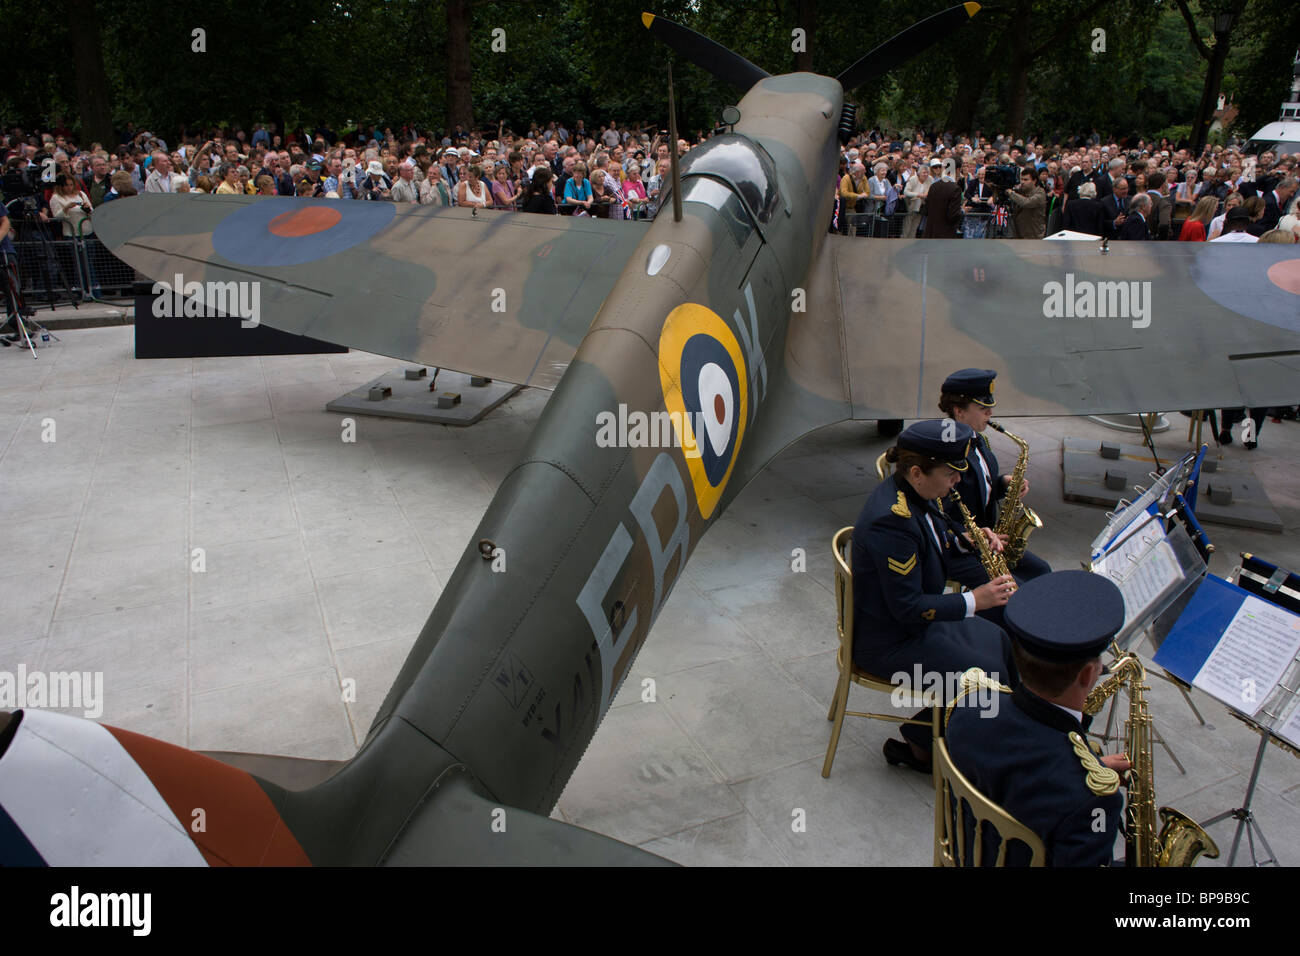 Les musiciens jouent de la RAF près de full-size replica Spitfire au 70e anniversaire de la SECONDE GUERRE MONDIALE Bataille d'Angleterre. Banque D'Images